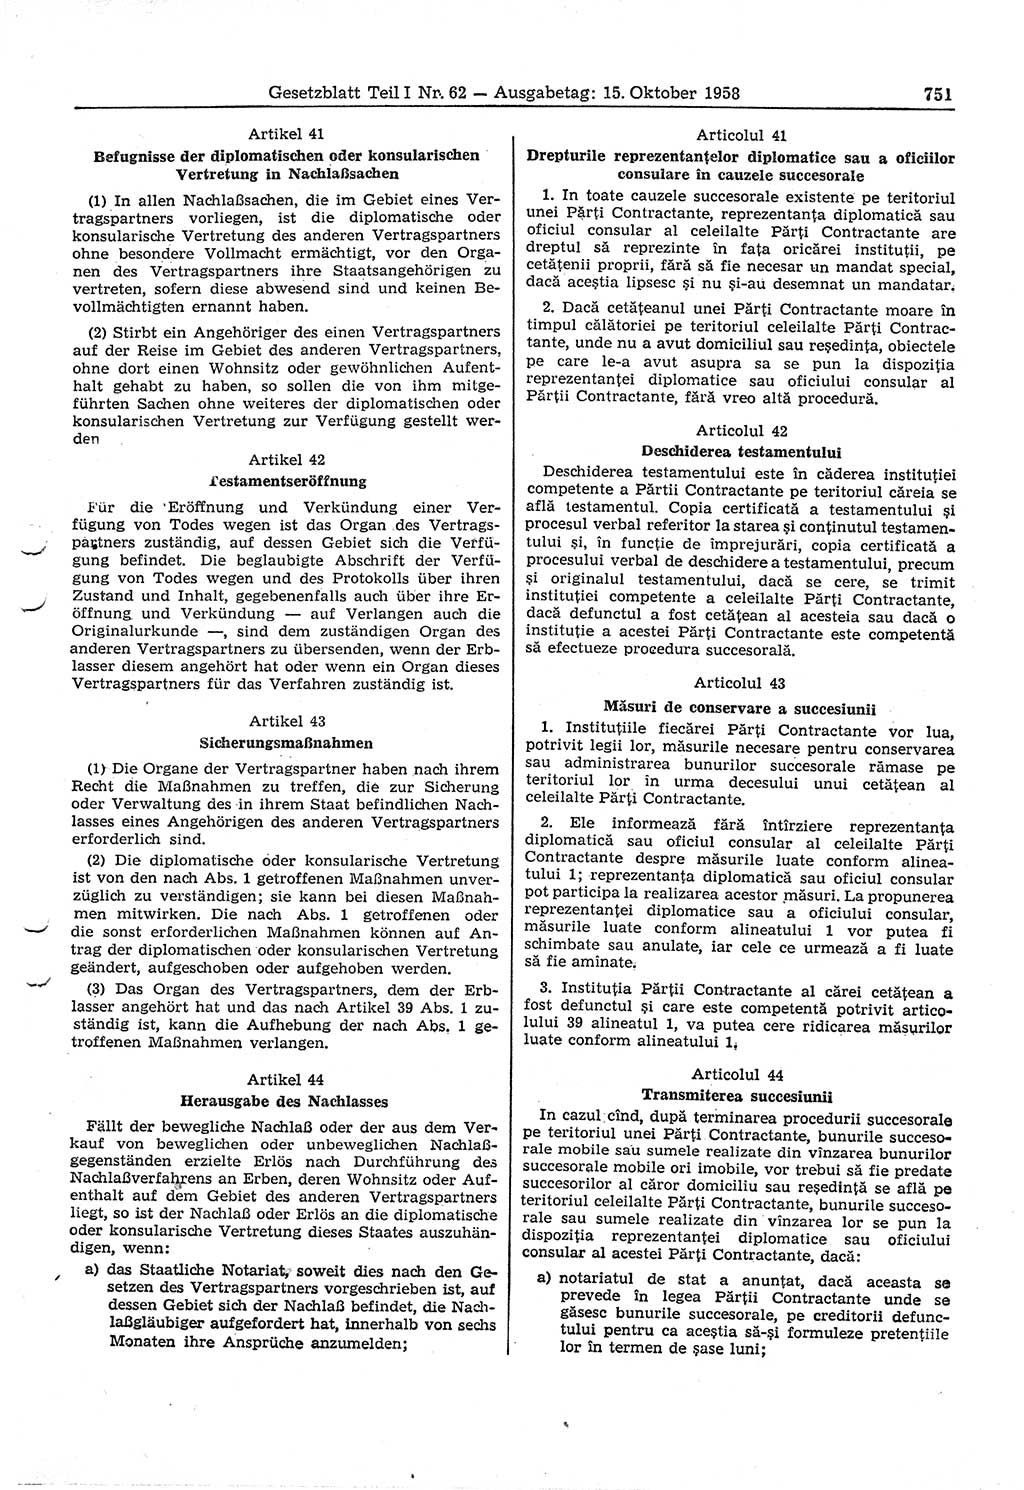 Gesetzblatt (GBl.) der Deutschen Demokratischen Republik (DDR) Teil Ⅰ 1958, Seite 751 (GBl. DDR Ⅰ 1958, S. 751)